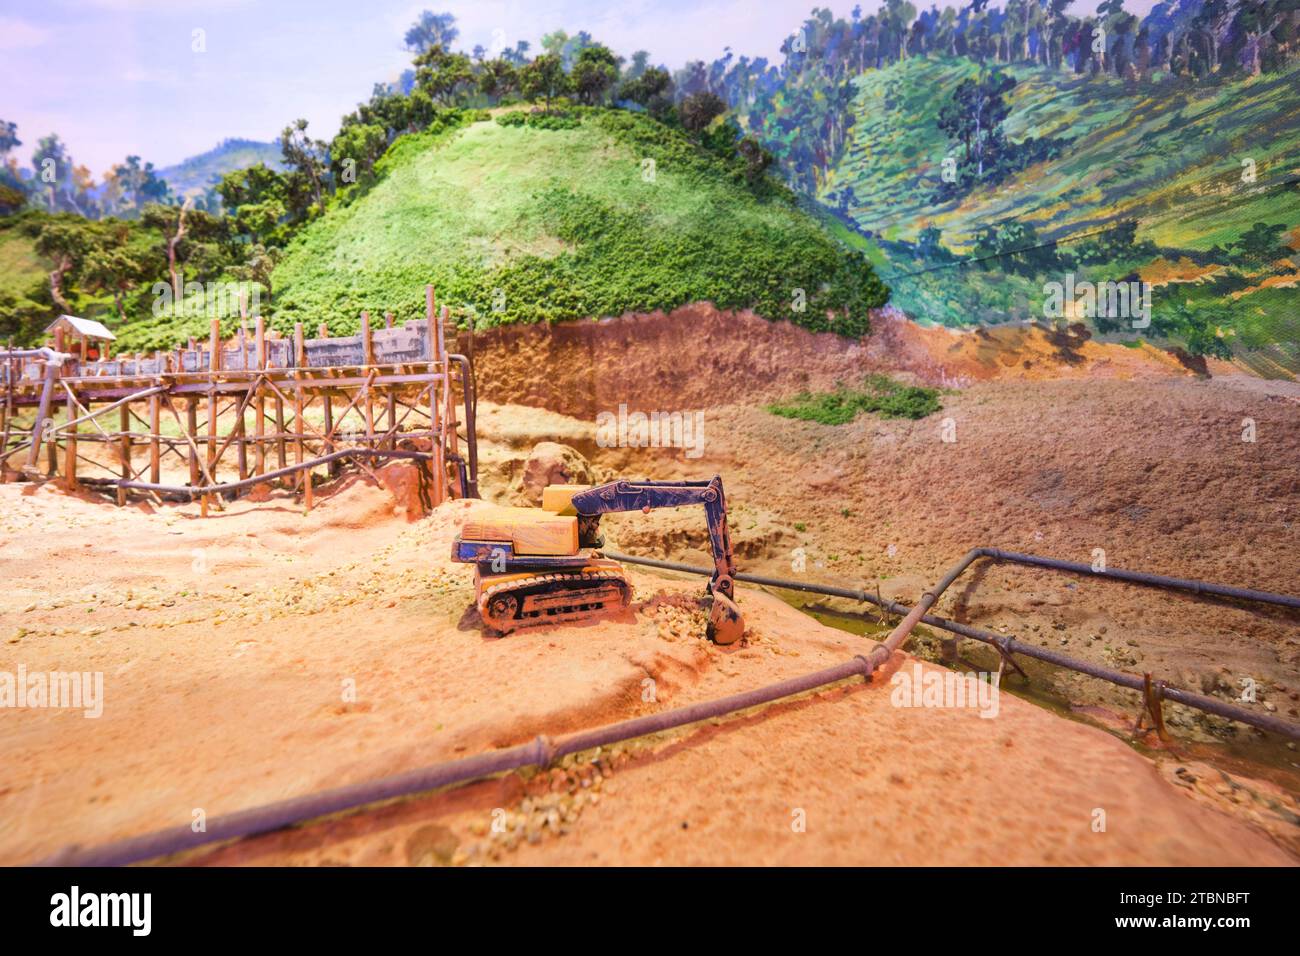 Détail dans un diorama minier, montrant un système de convoyeur surélevé pour déplacer des roches. Au musée du rock et des minéraux à Bangkok, Thaïlande. Banque D'Images